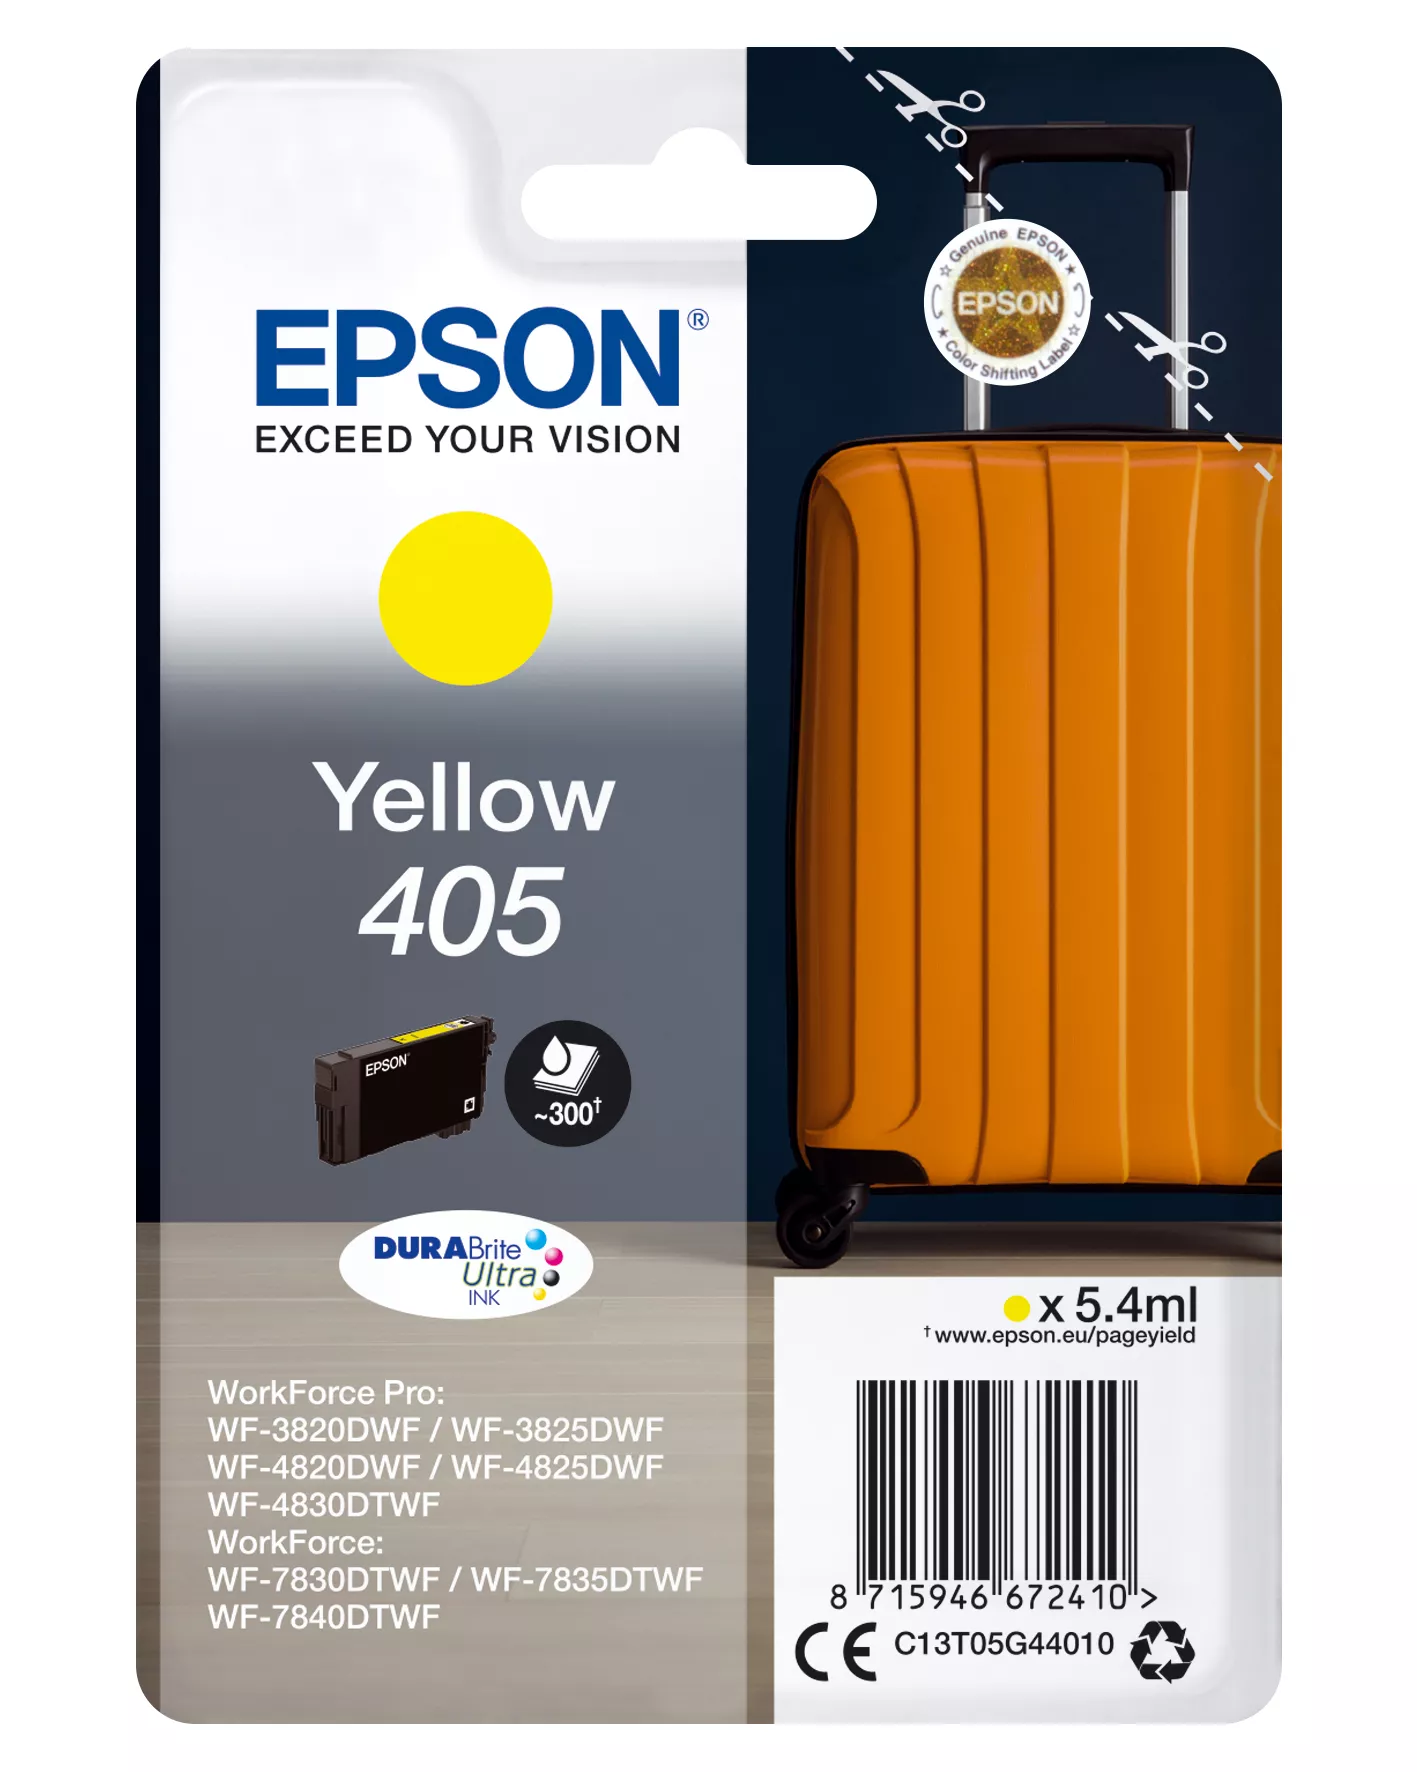 Achat EPSON Singlepack Yellow 405 DURABrite Ultra Ink - 8715946672410